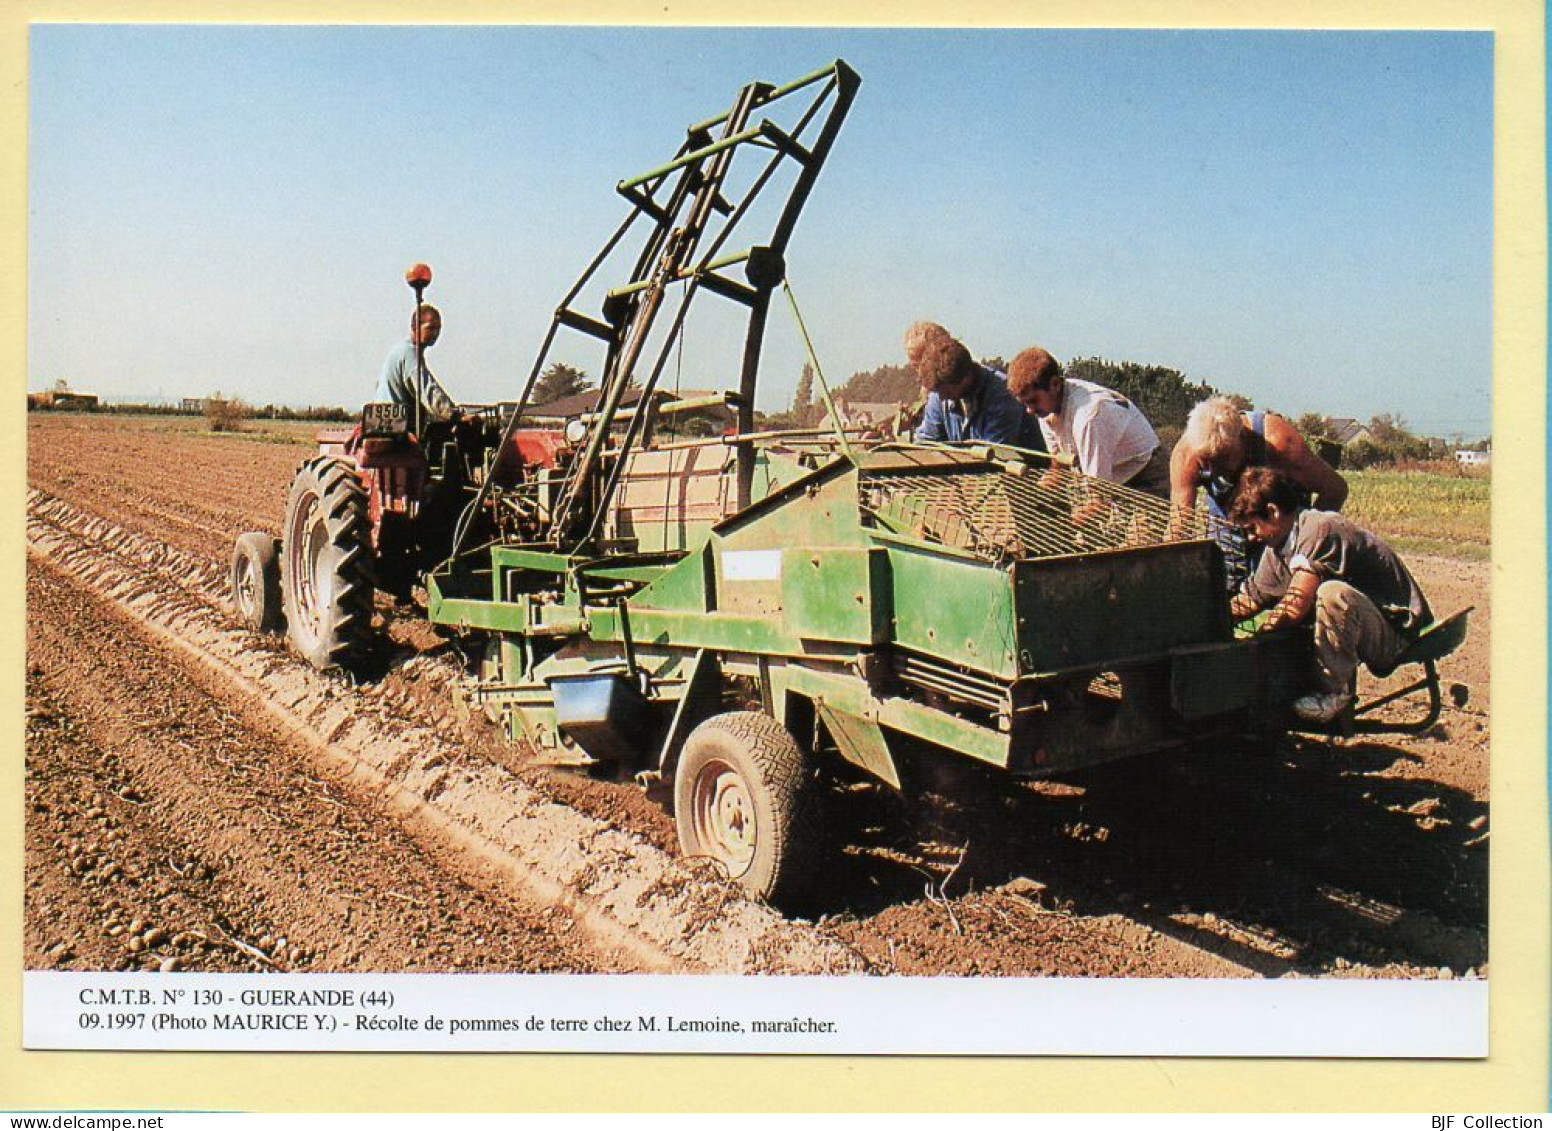 Récolte De Pommes De Terre Chez Mr LEMOINE Maraîcher / GUERANDE (44) (MAURICE Y.) C.M.T.B. N° 130 / 400 Ex (CARTOUEST) - Farmers